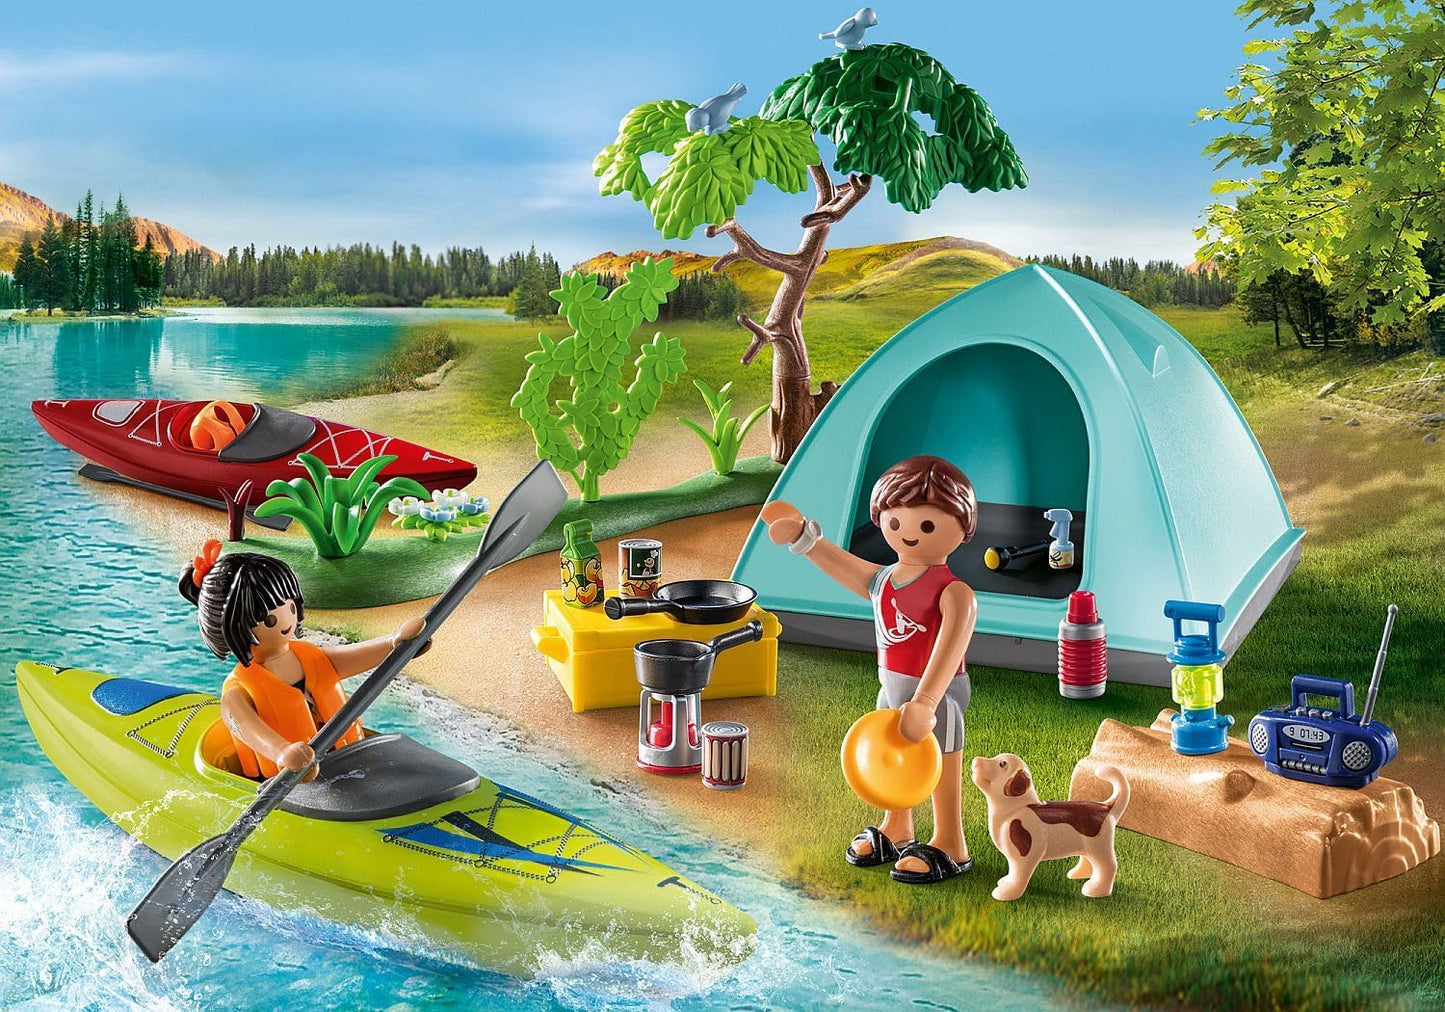 Playmobil 71425 Acampamento divertido para a família com fogueira, brinquedo ao ar livre e dramatização imaginativa, conjuntos adequados para crianças de 4 anos ou mais